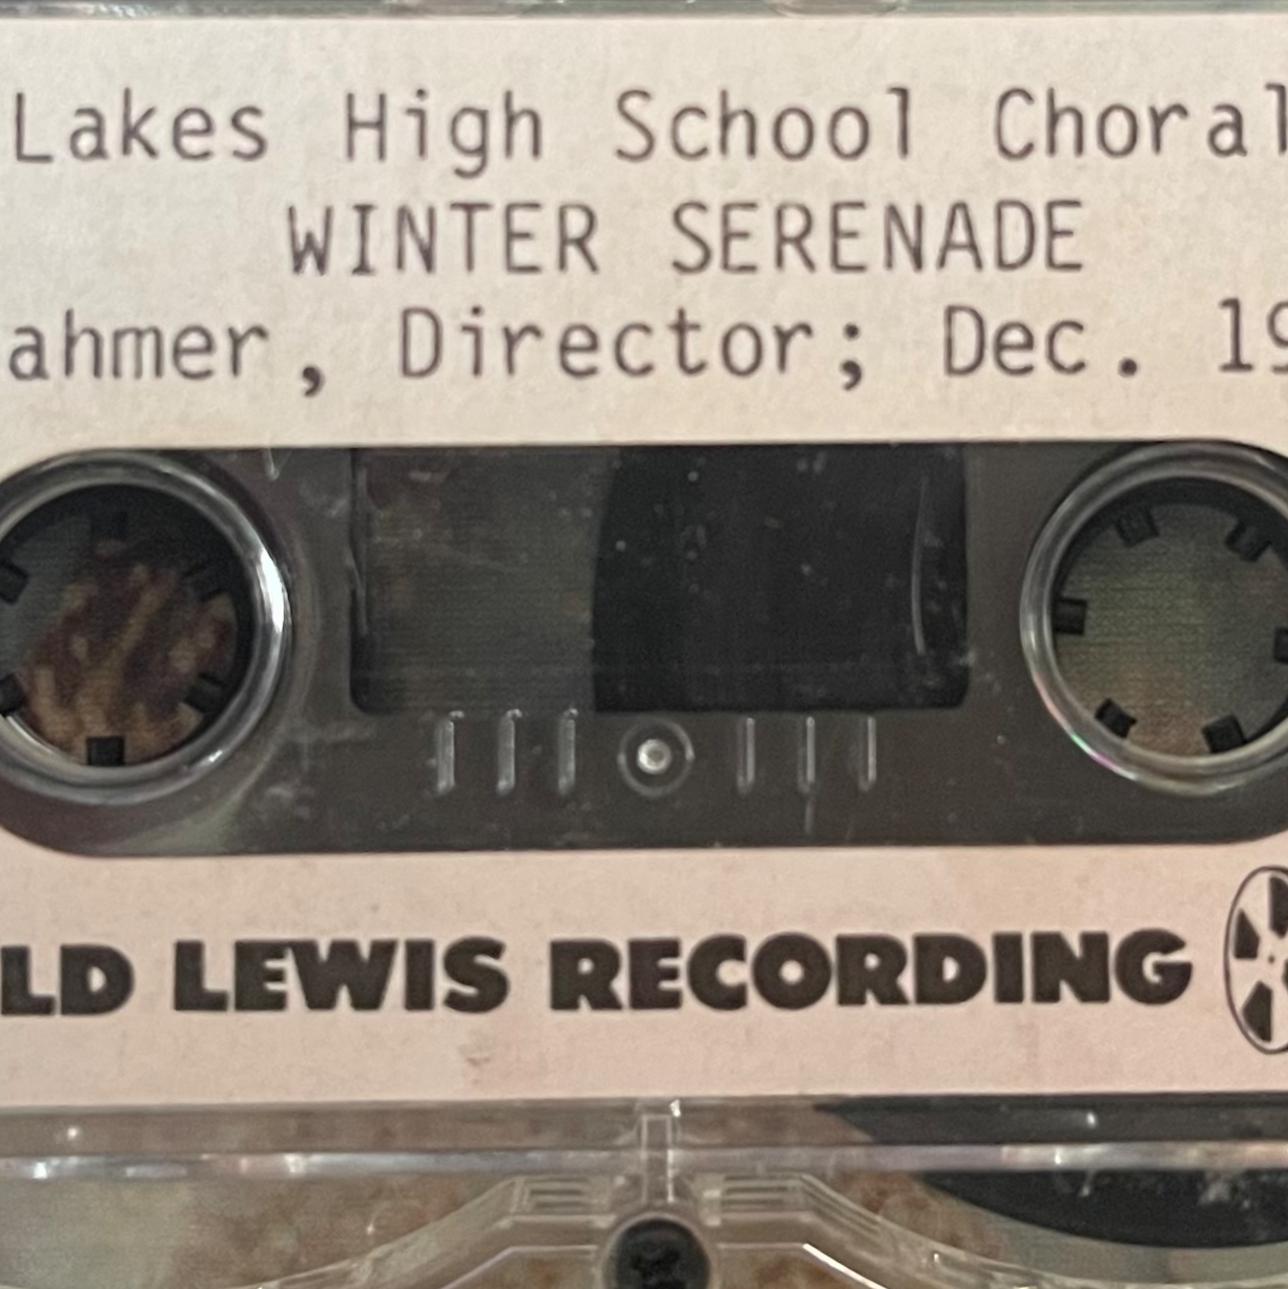 SLHS Winter Serenade, 12/19/90